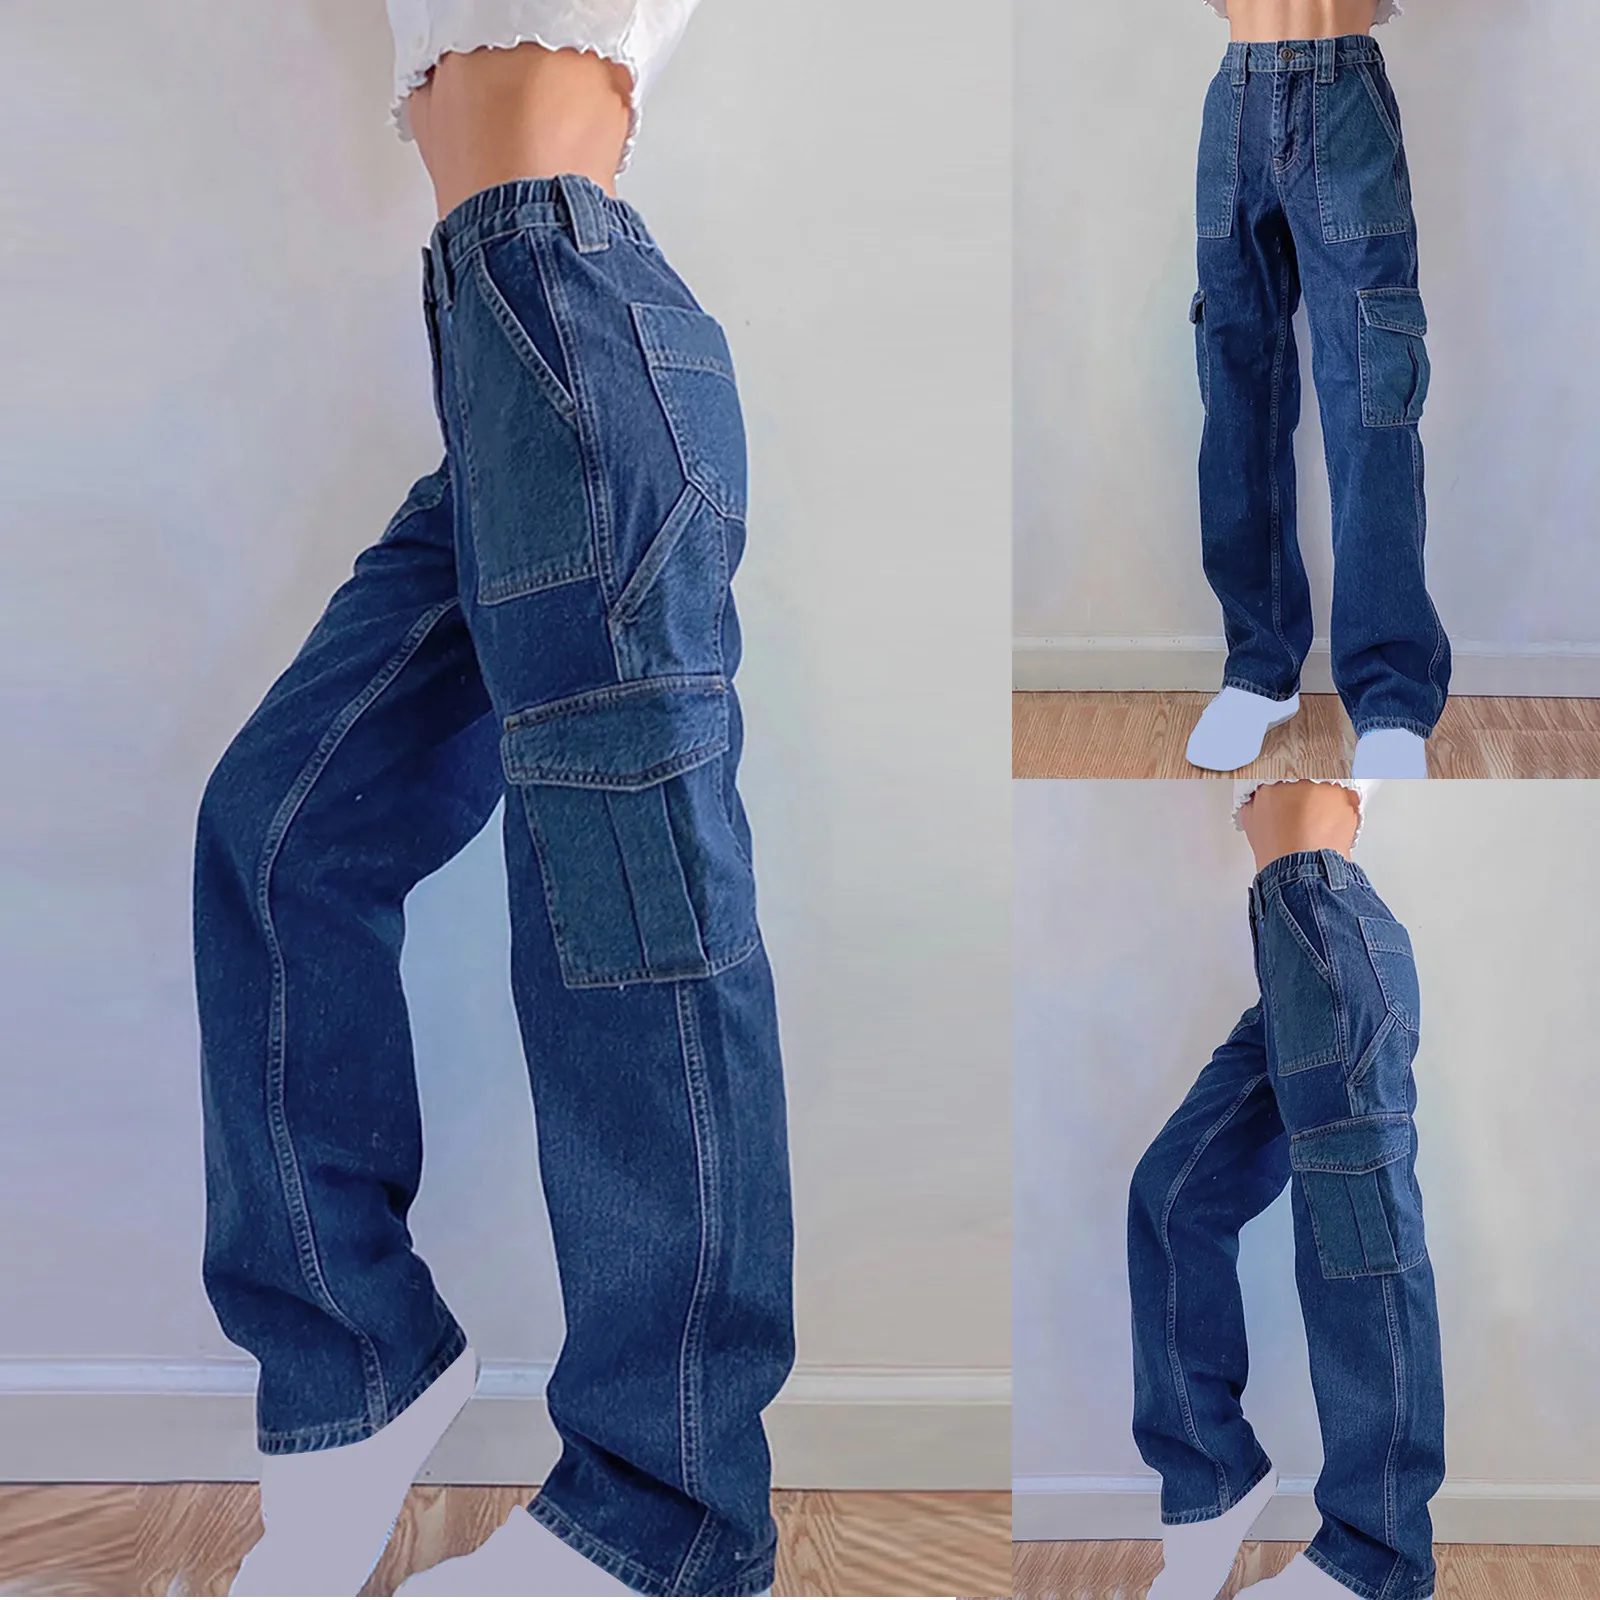 

Женские брюки с высокой талией, потертые темные джинсы с несколькими карманами, штаны с завышенной талией, яркие широкие облегающие джинсы ...